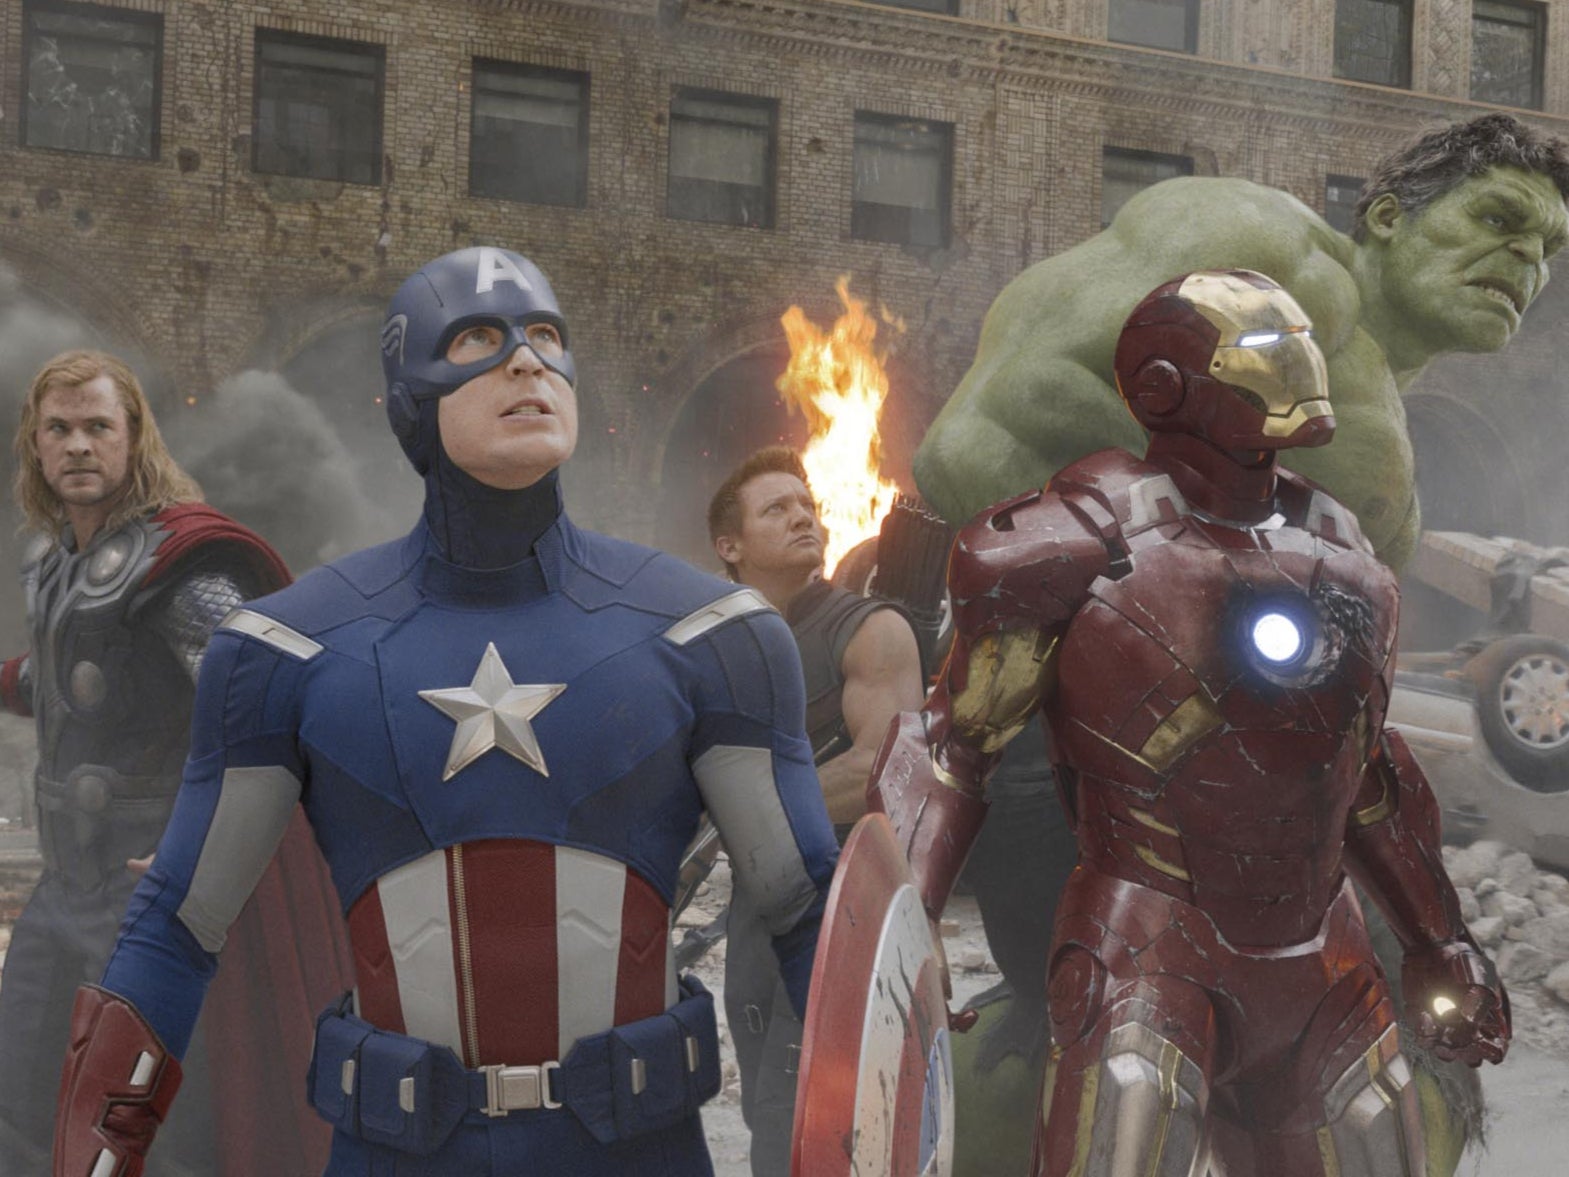 Chris Hemsworth, Chris Evans, Jeremy Renner, Robert Downey Jr, and Mark Ruffalo in ‘The Avengers'